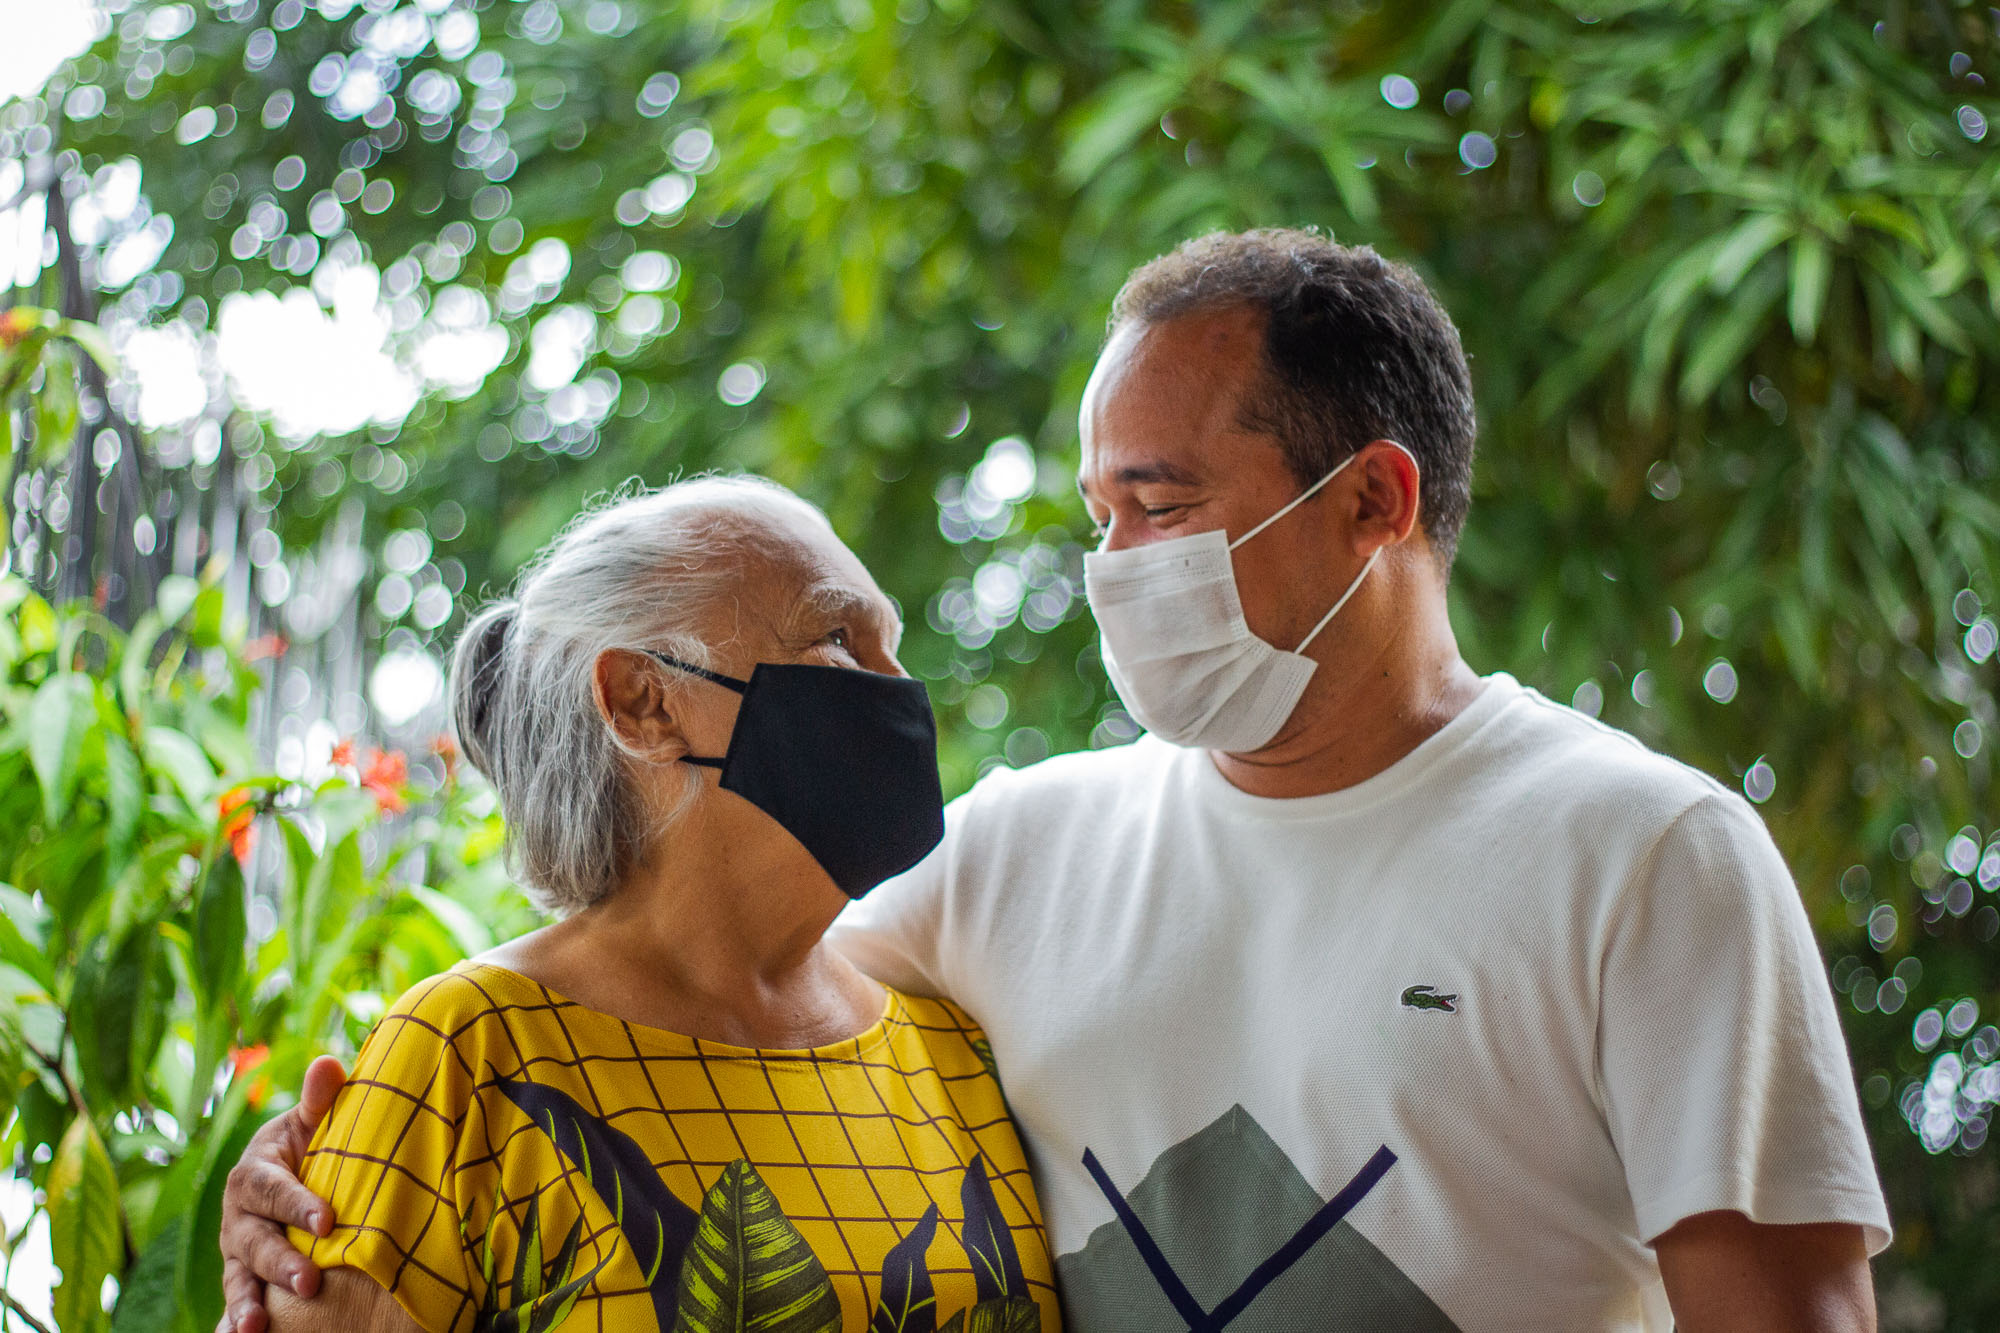 Caos na Pandemia: Famílias lutam pela vida em meio às mortes da Covid-19